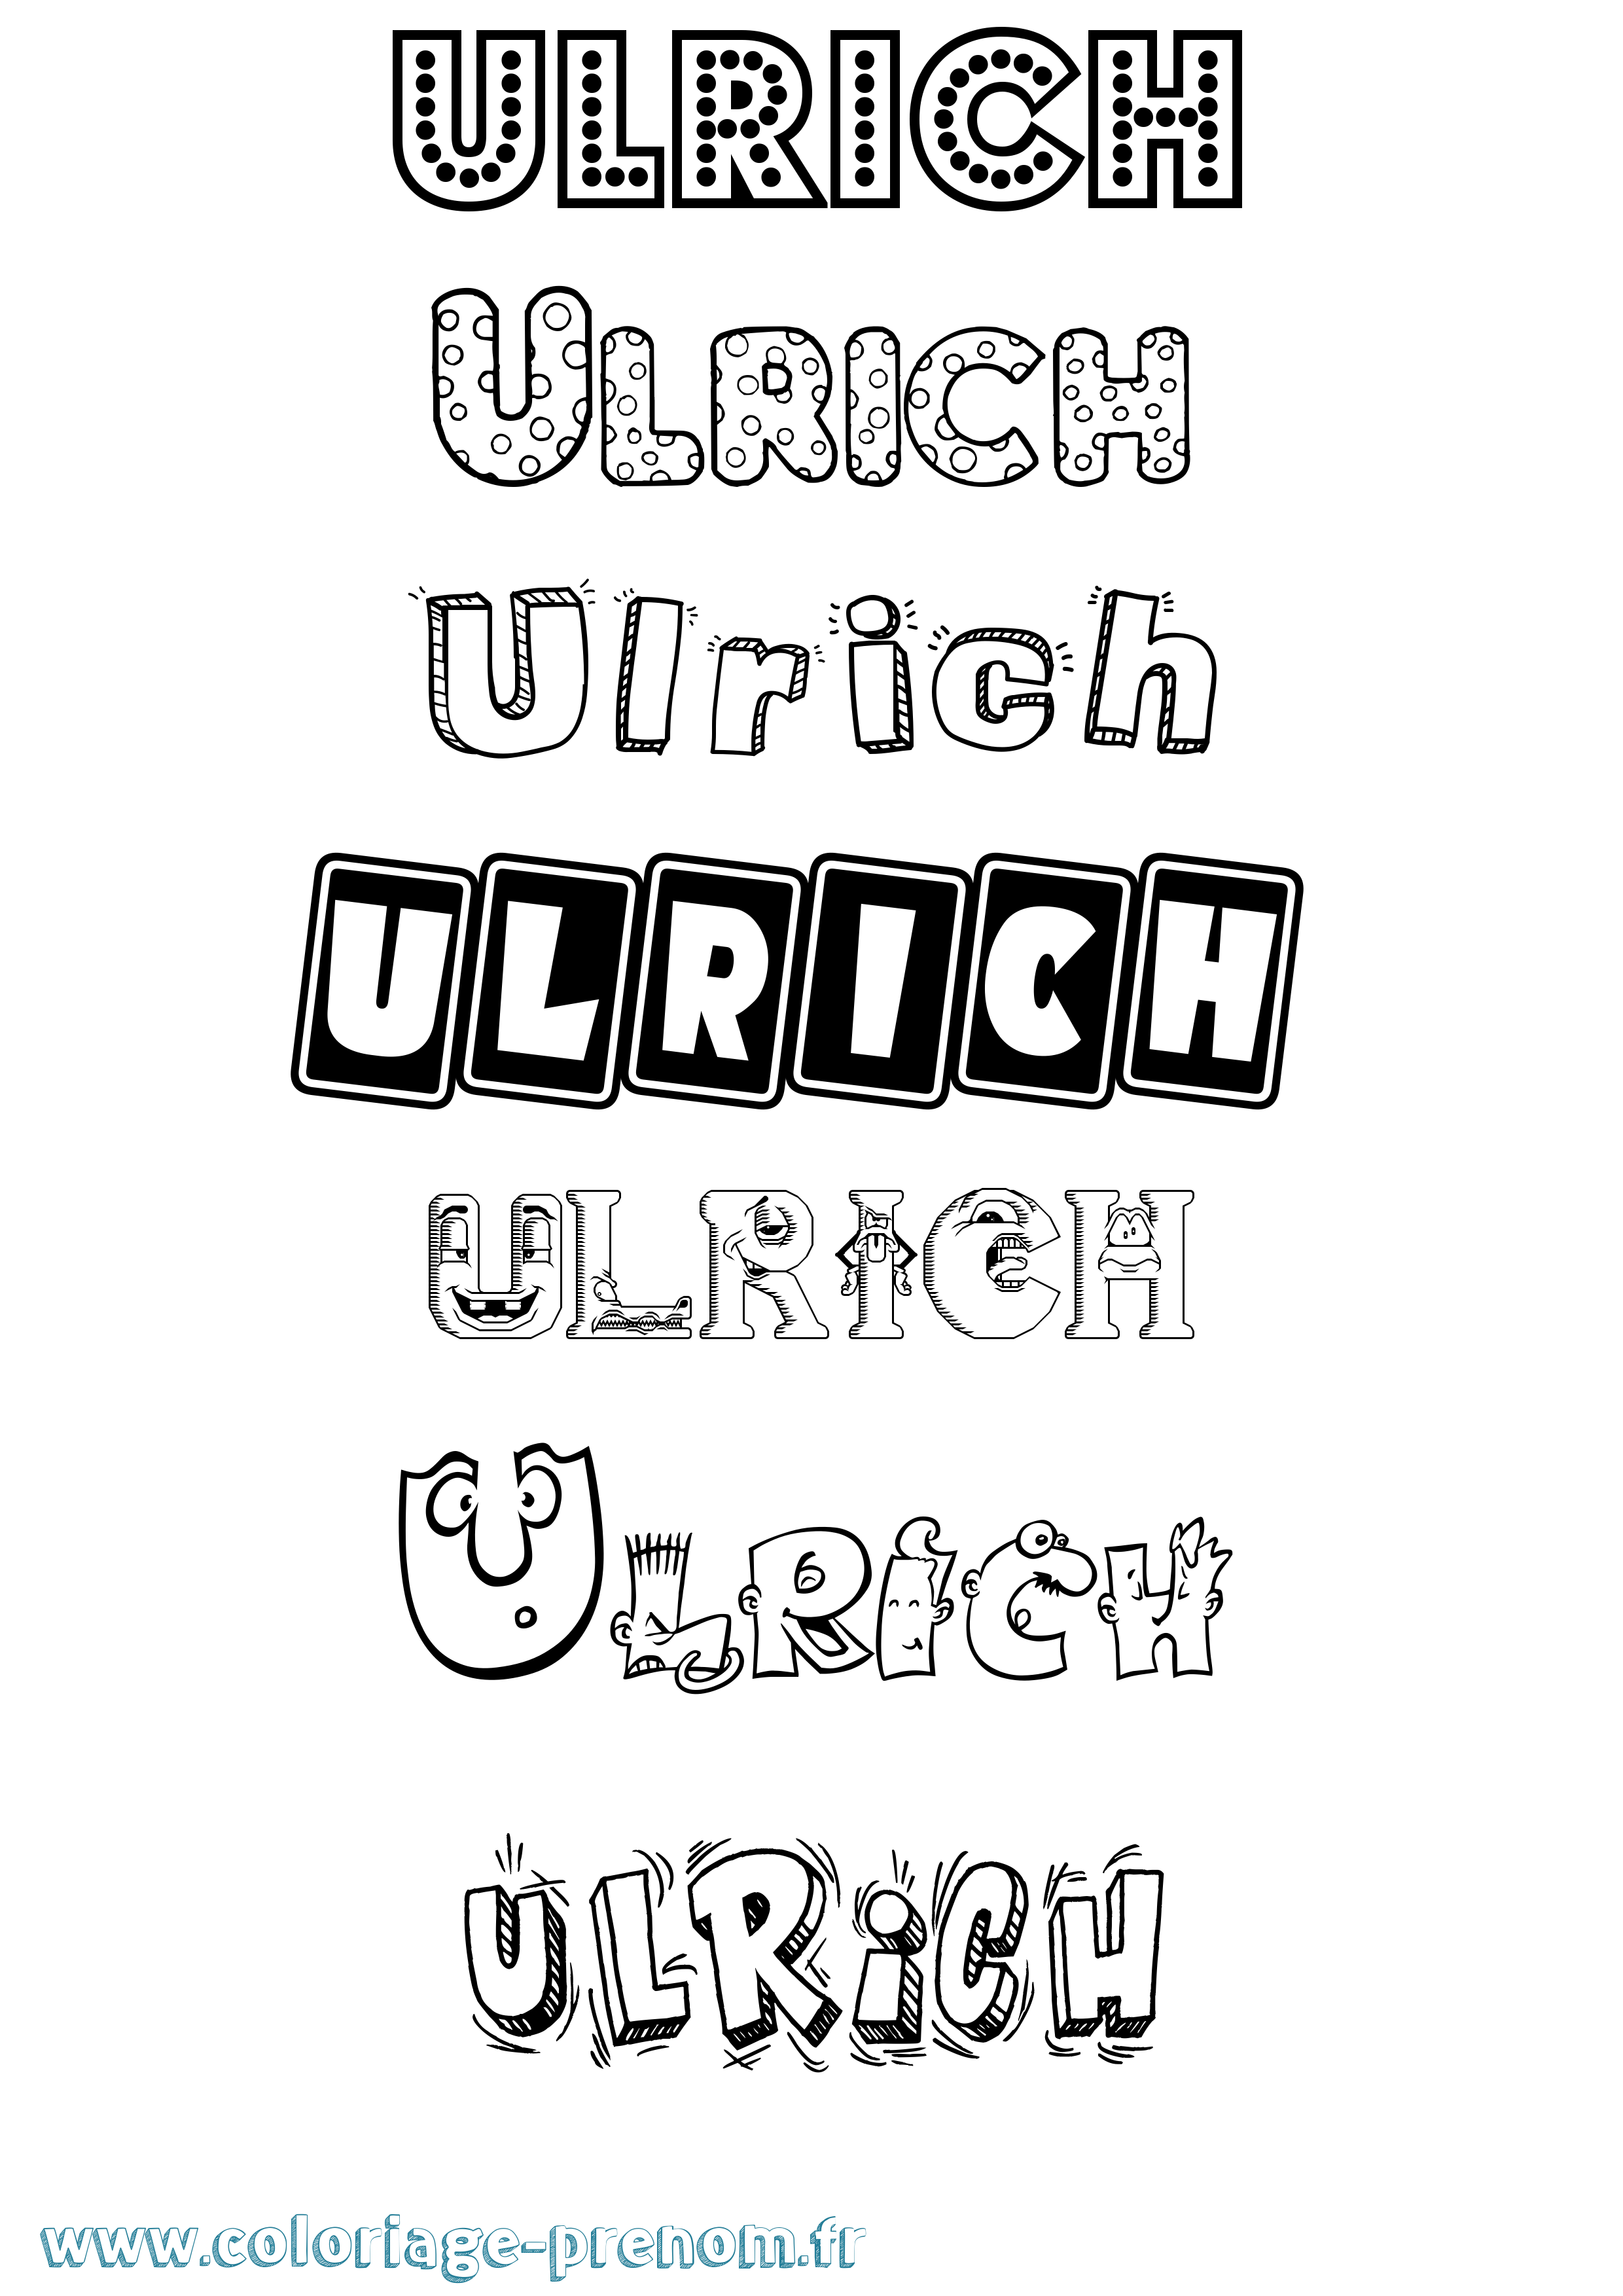 Coloriage prénom Ulrich Fun